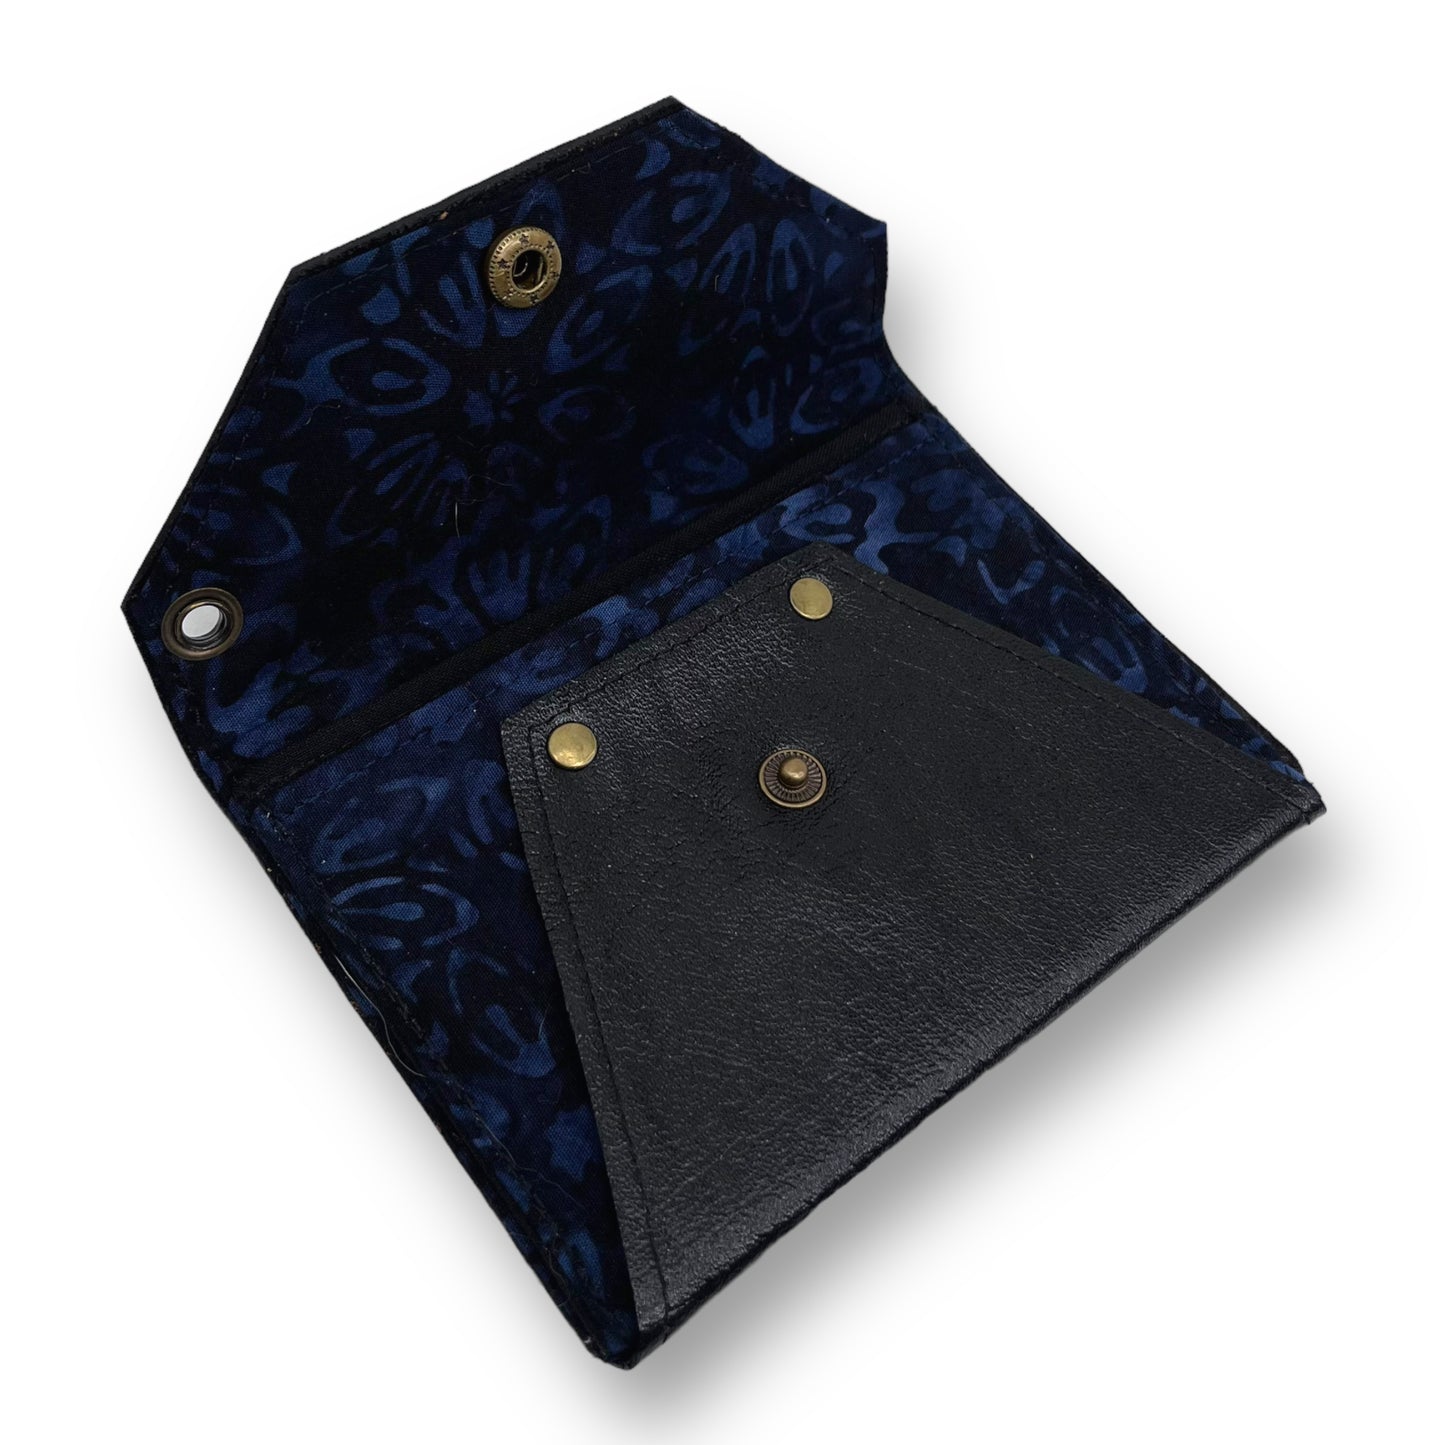 Black & Blue Envelope Leather Wallet